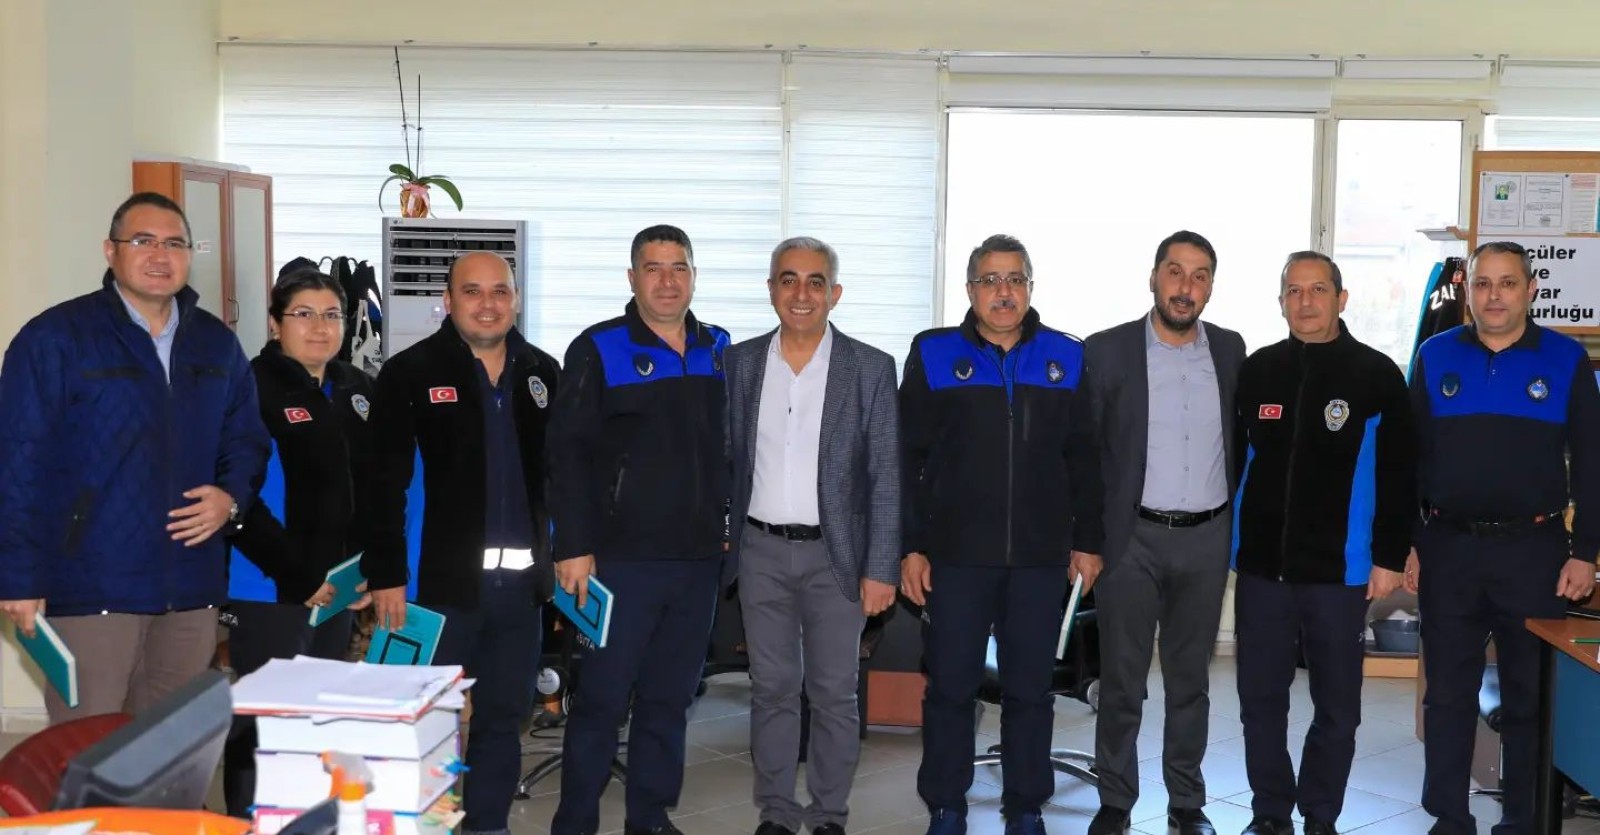 Belediye Başkanımız Muhammet Karakuş ve Başkan Yardımcımız Hüseyin Ertuğrul Belediye Hizmet Binamız içinde çalışan personelimizin yeni yıllarını kutladılar.